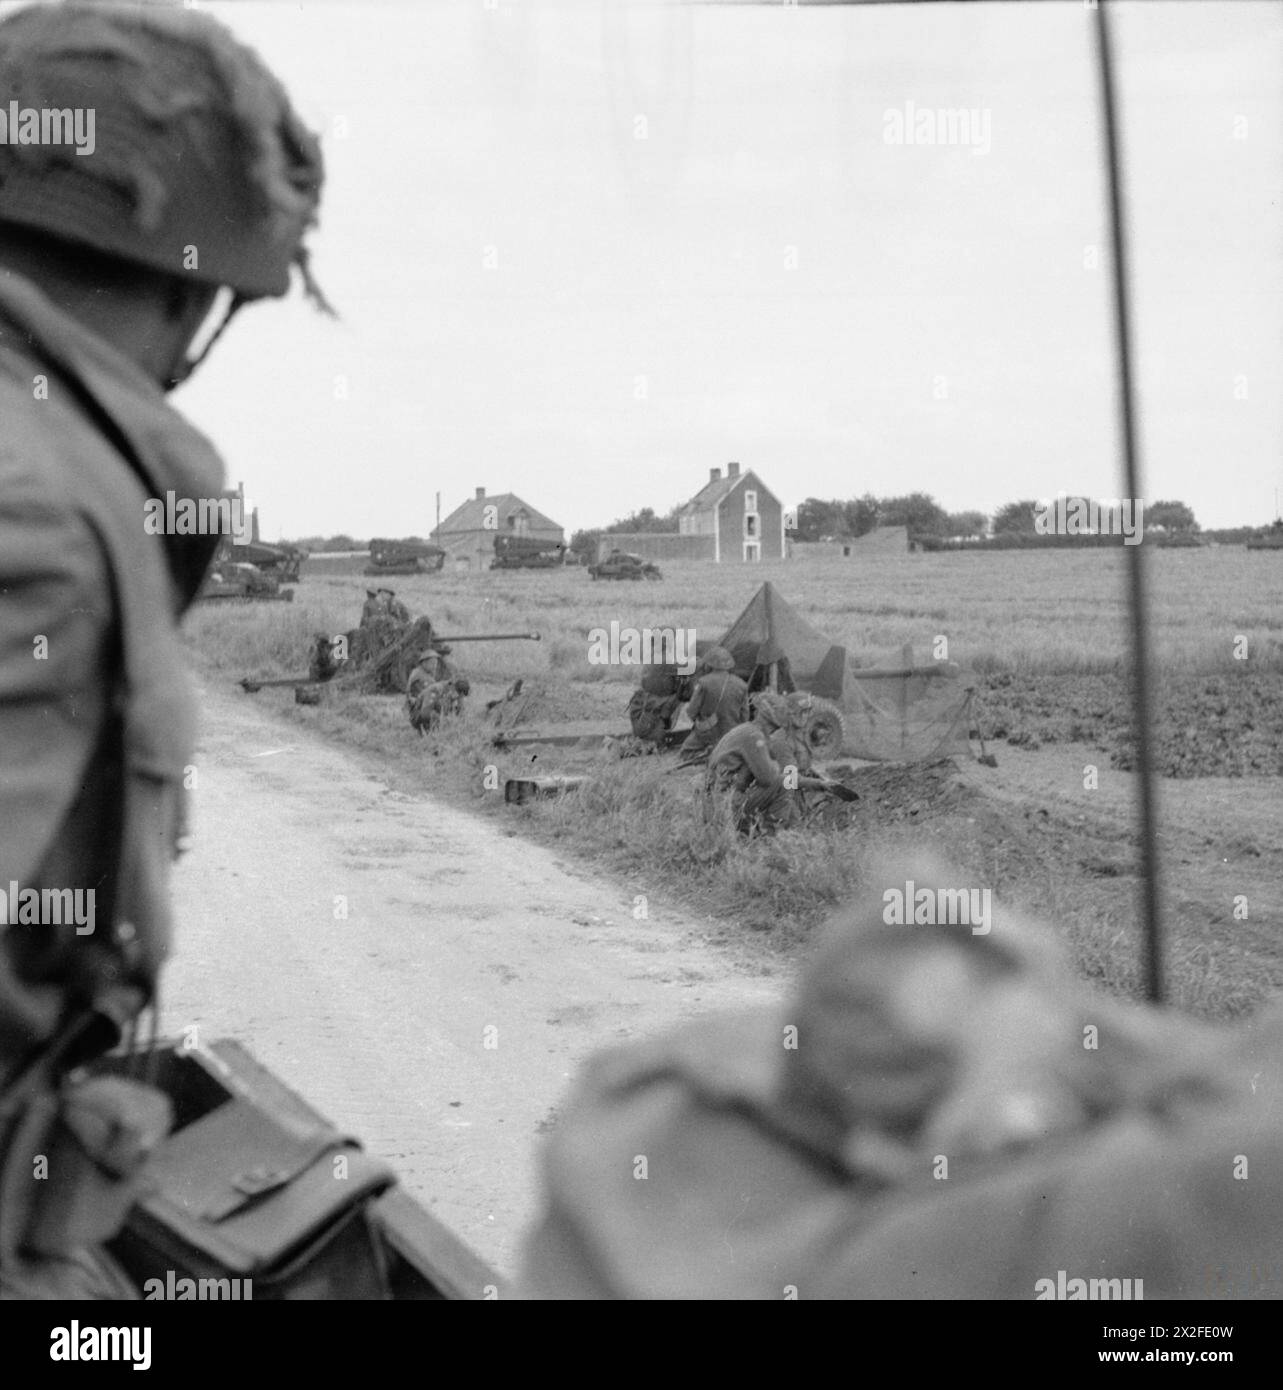 D-DAY - FORZE BRITANNICHE DURANTE L'INVASIONE DELLA NORMANDIA 6 GIUGNO 1944 - Uno schermo di cannoni anticarro 6-pdr in posizione al fianco della Rue de la Croix Rose a Hermanville-sur-Mer, 6 giugno 1944. La Route de Caen può essere vista dirigersi verso l'esercito britannico destro Foto Stock